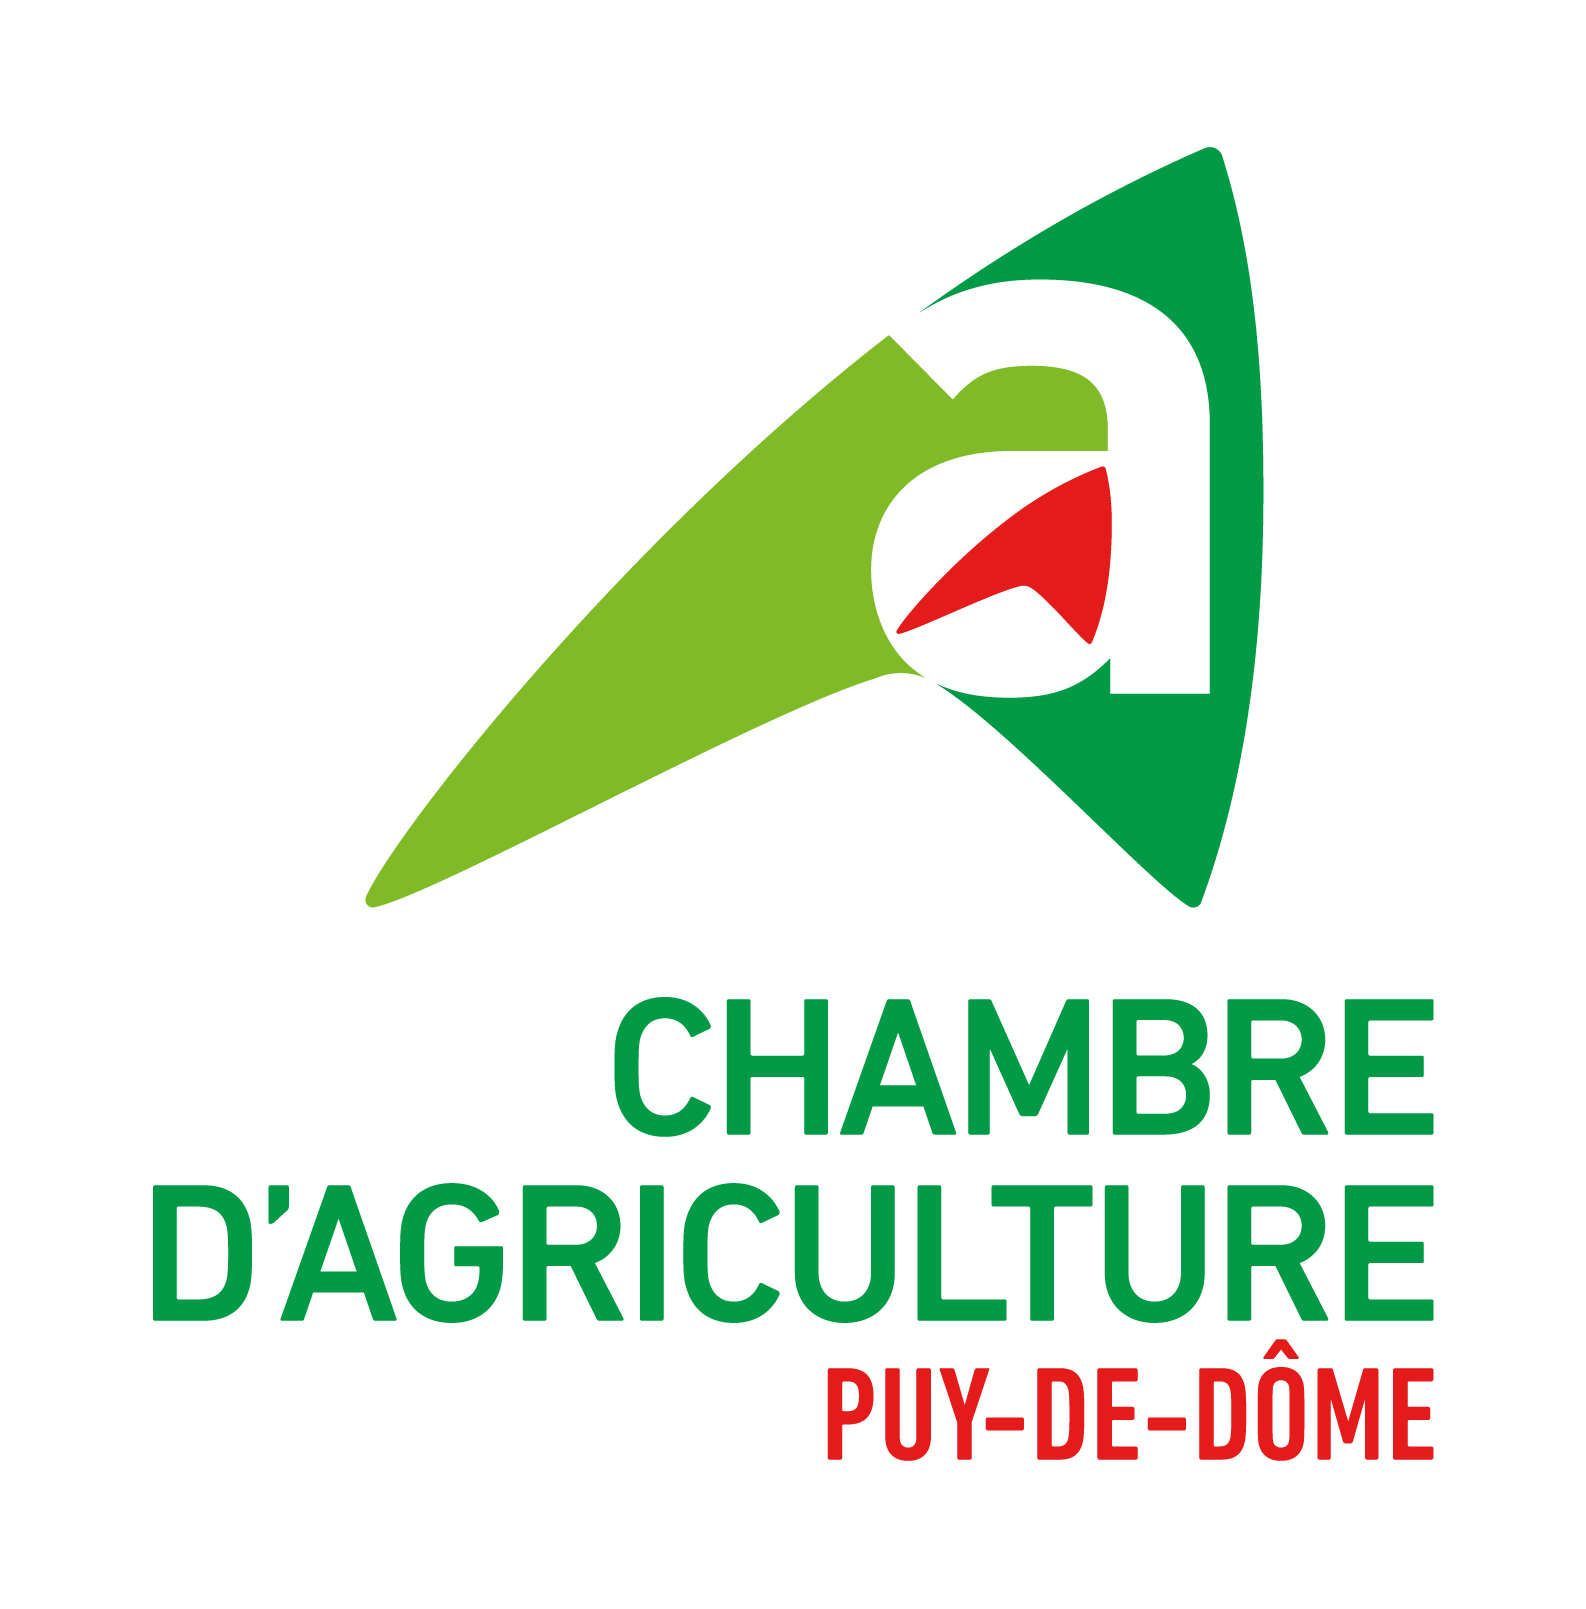 Chambre d'agriculture - Puy-de-Dôme